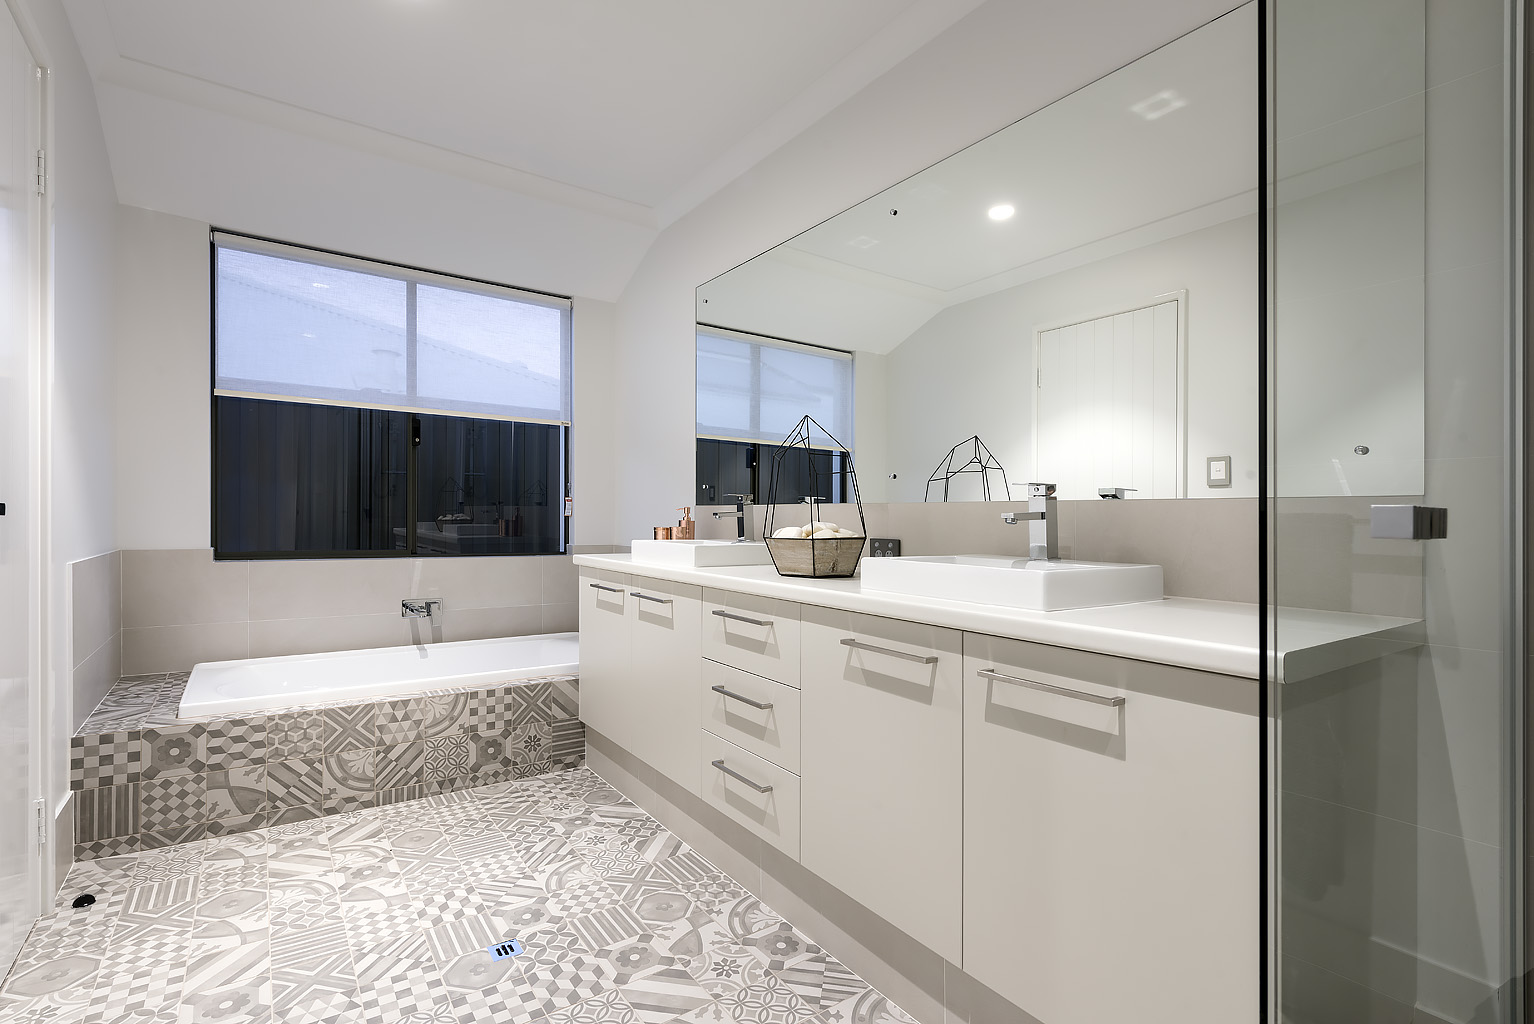 Colorado - 3 Bedroom 2 Bathroom Single Storey Design by Plunkett Homes